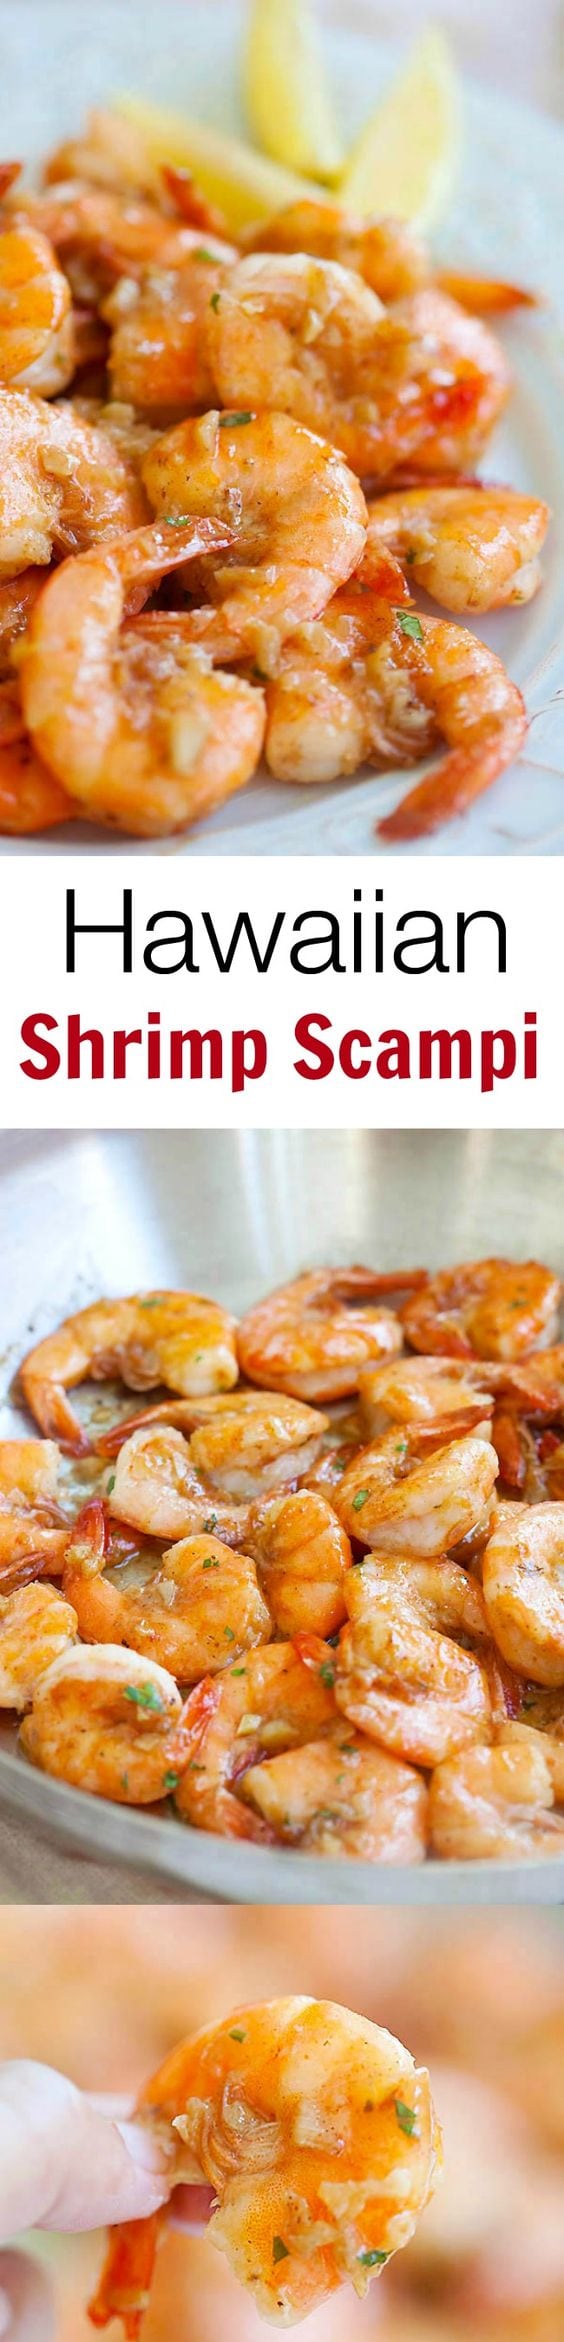 Hawaiian Shrimp Scampi - garlic butter sauteed shrimp with lemon juice and white wine. This Hawaiian shrimp scampi recipe is so good | rasamalaysia.com